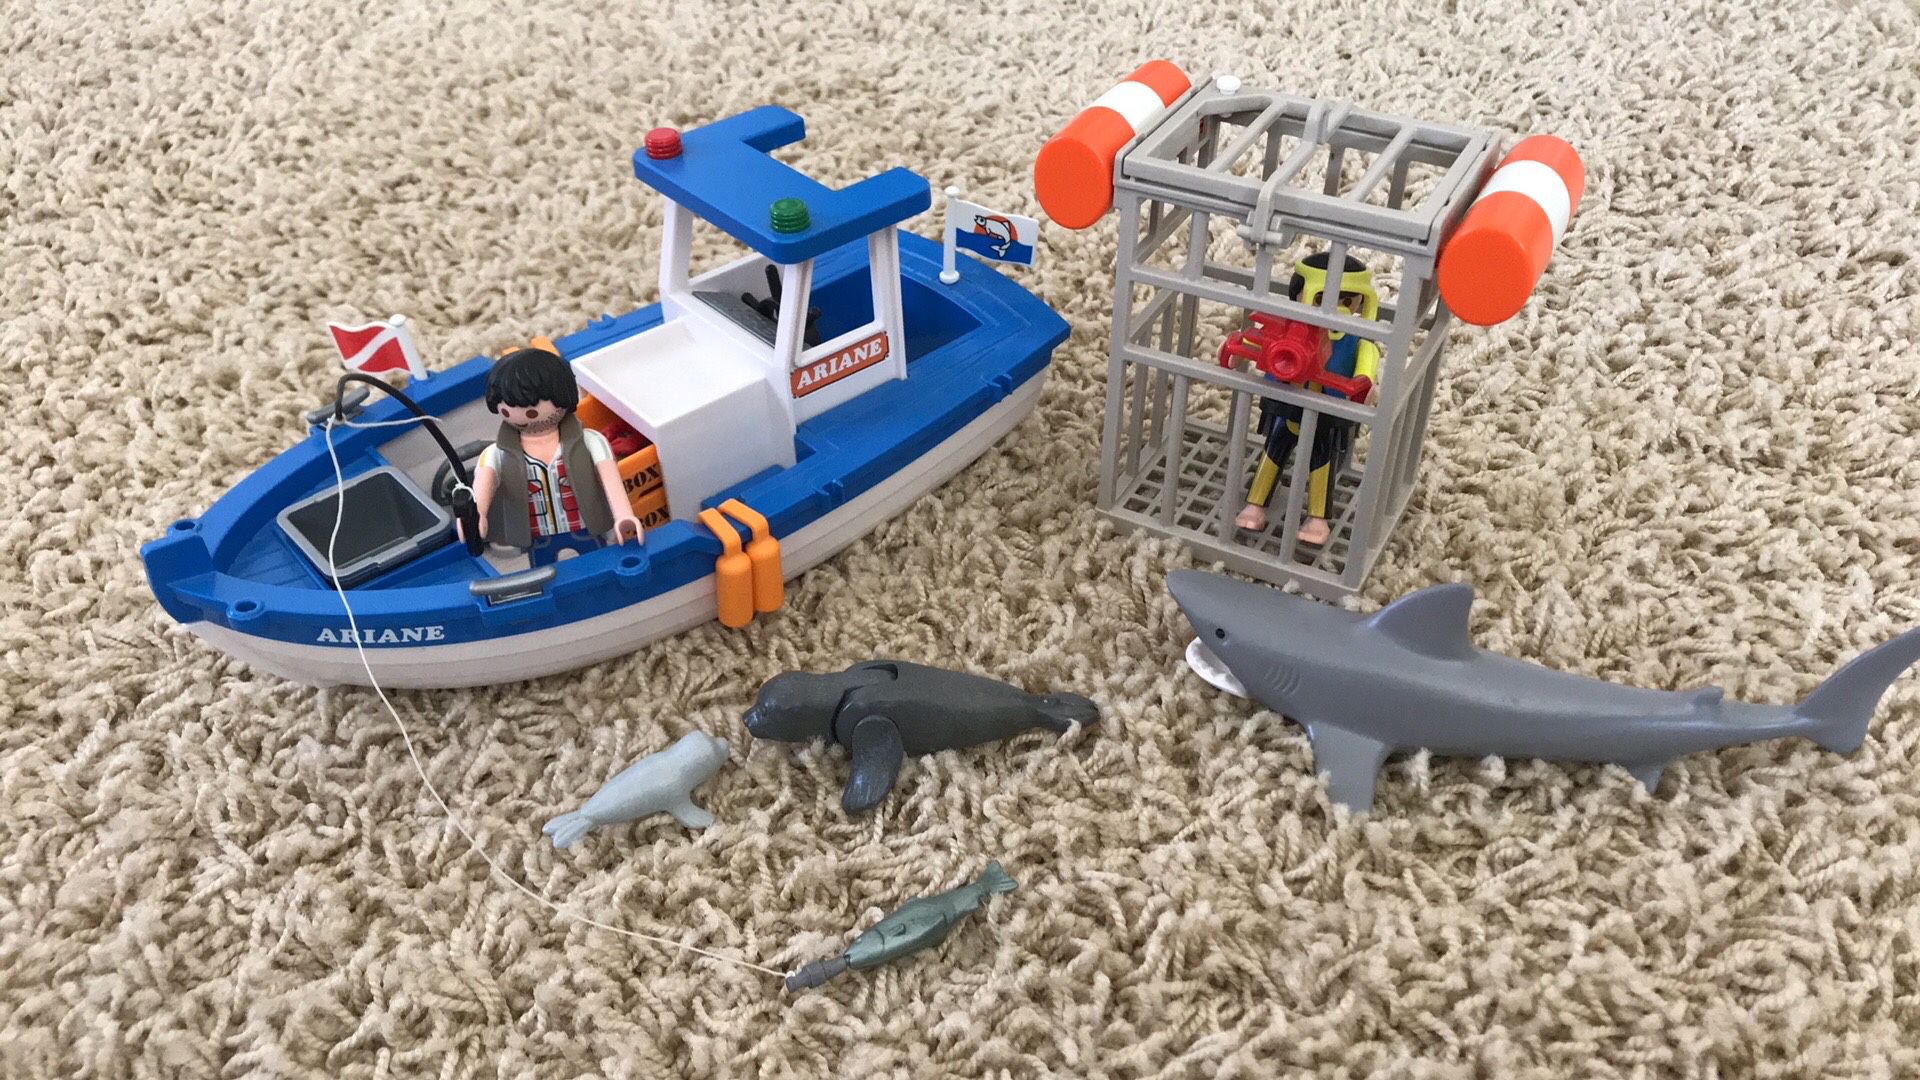 Playmobil fishing scuba dive kit